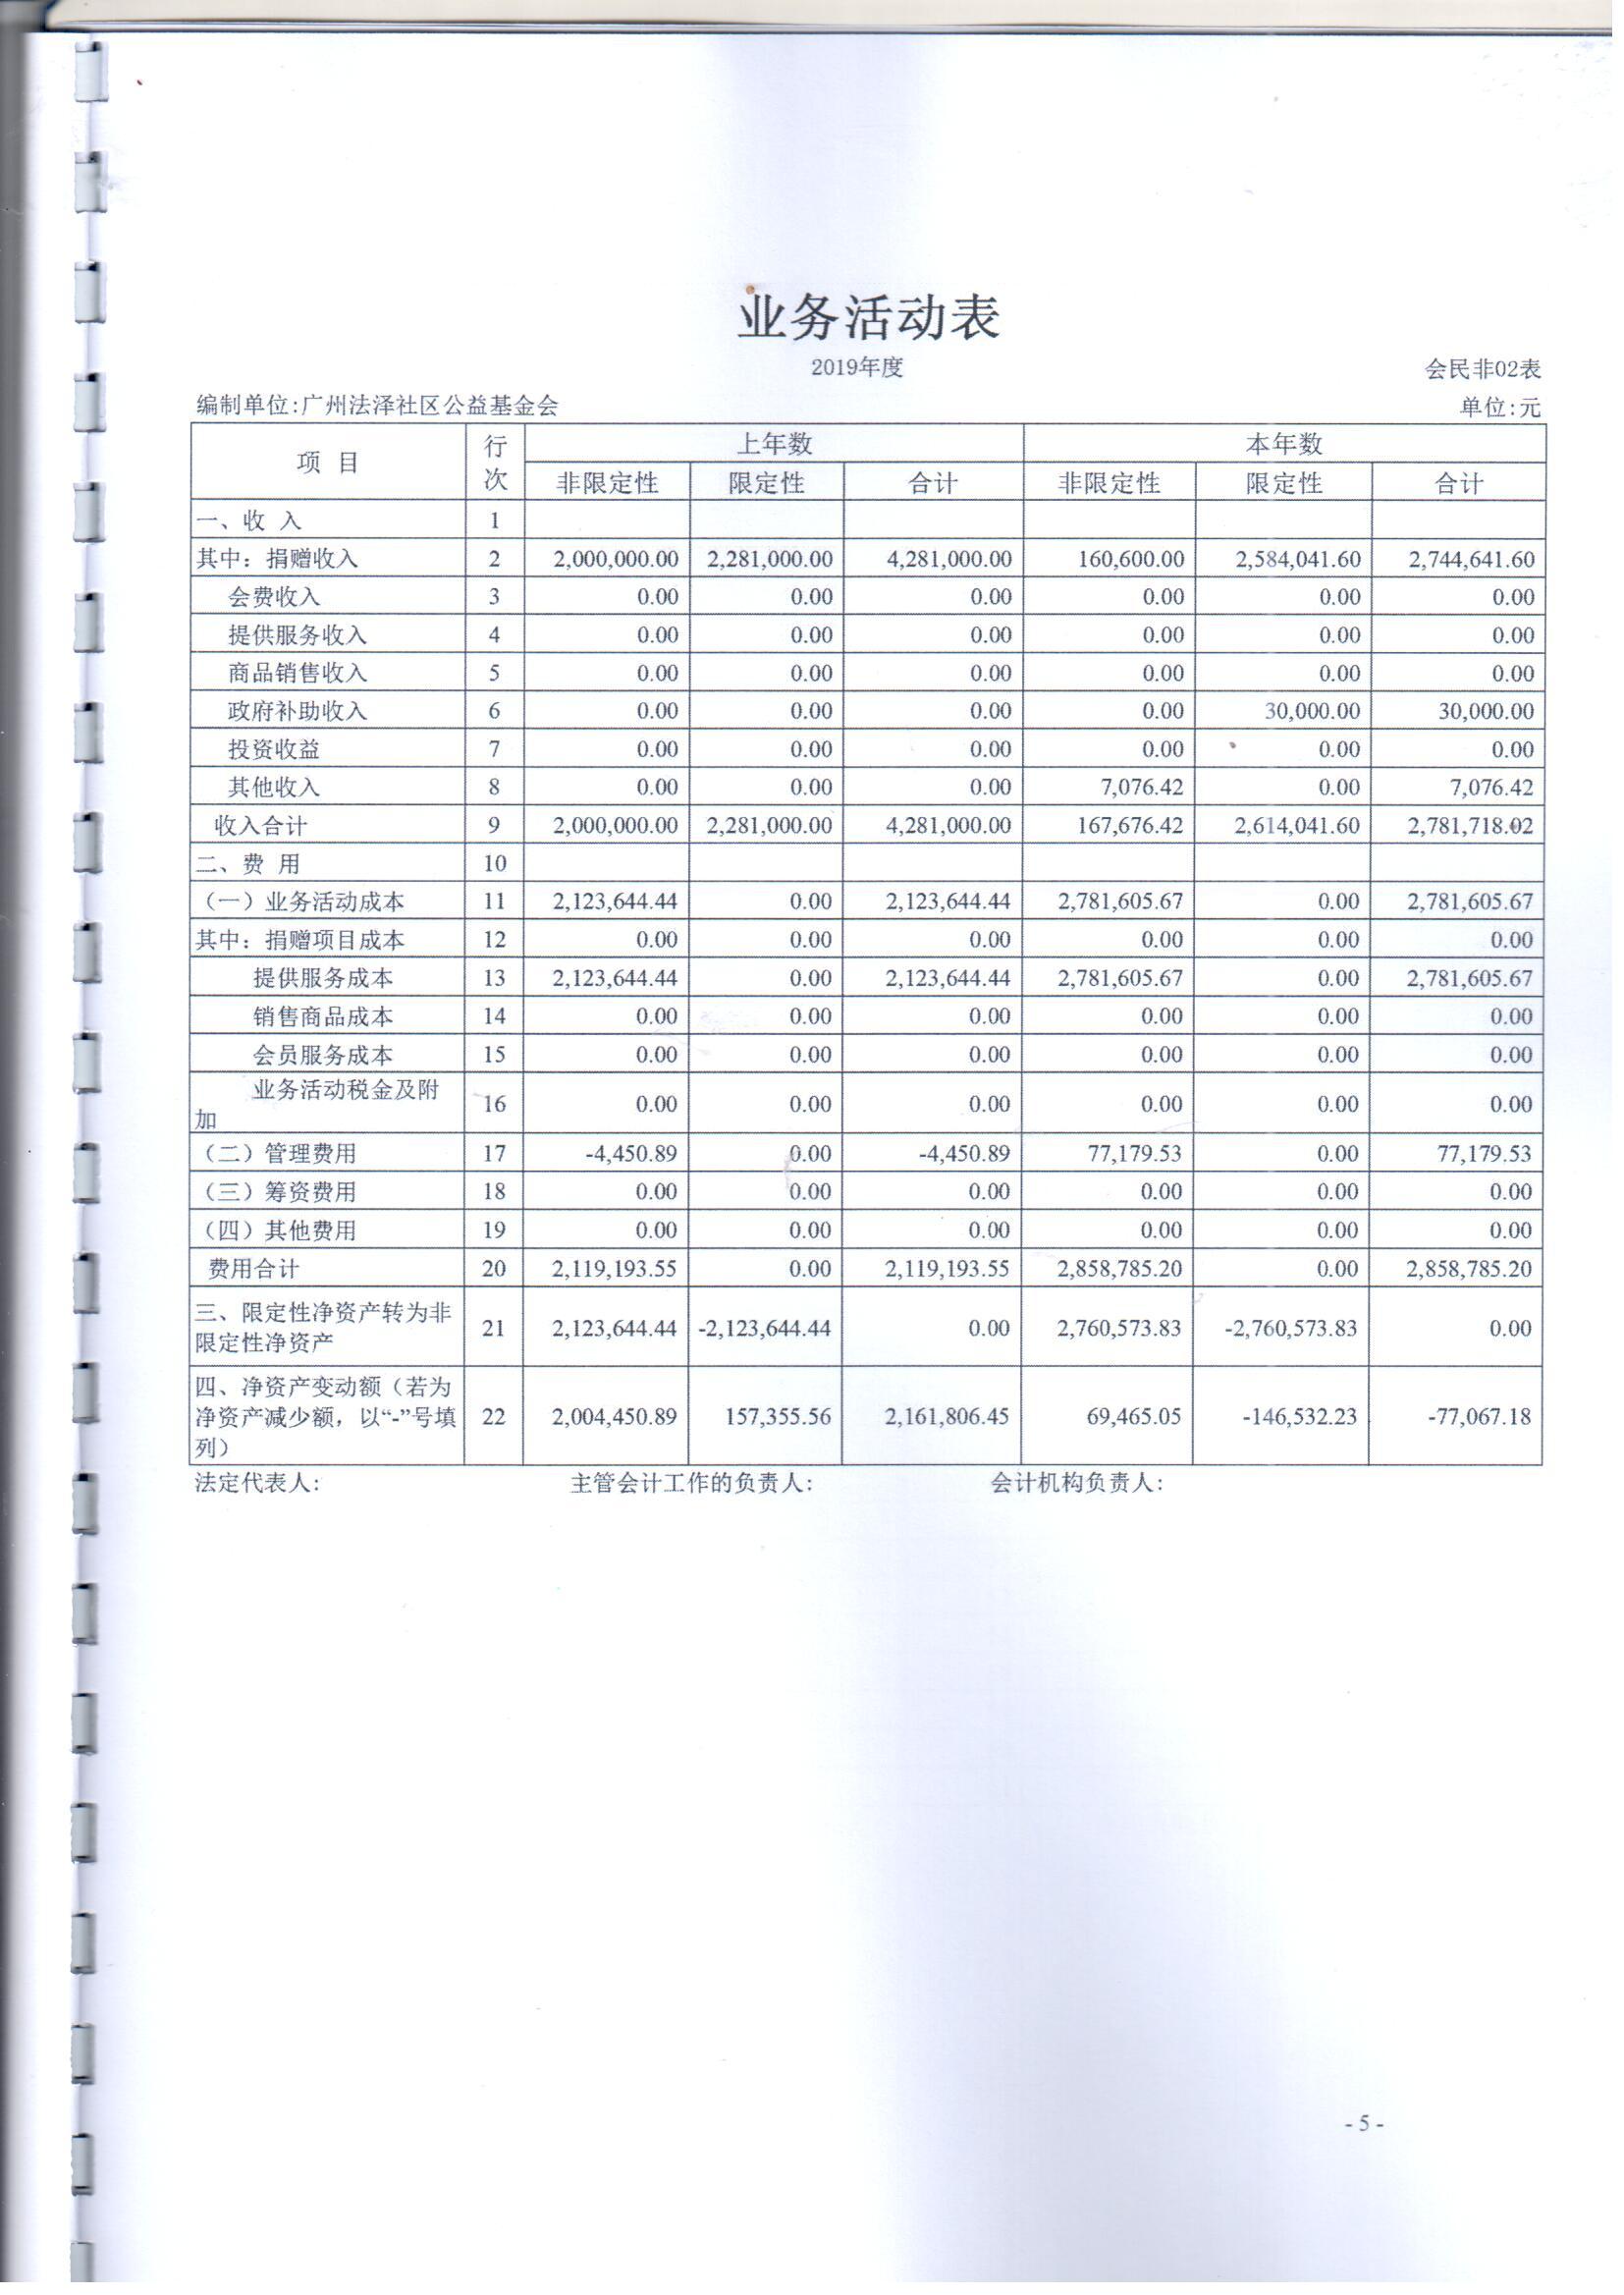 2019年法泽基金会财务审计报告_页面_07.jpg